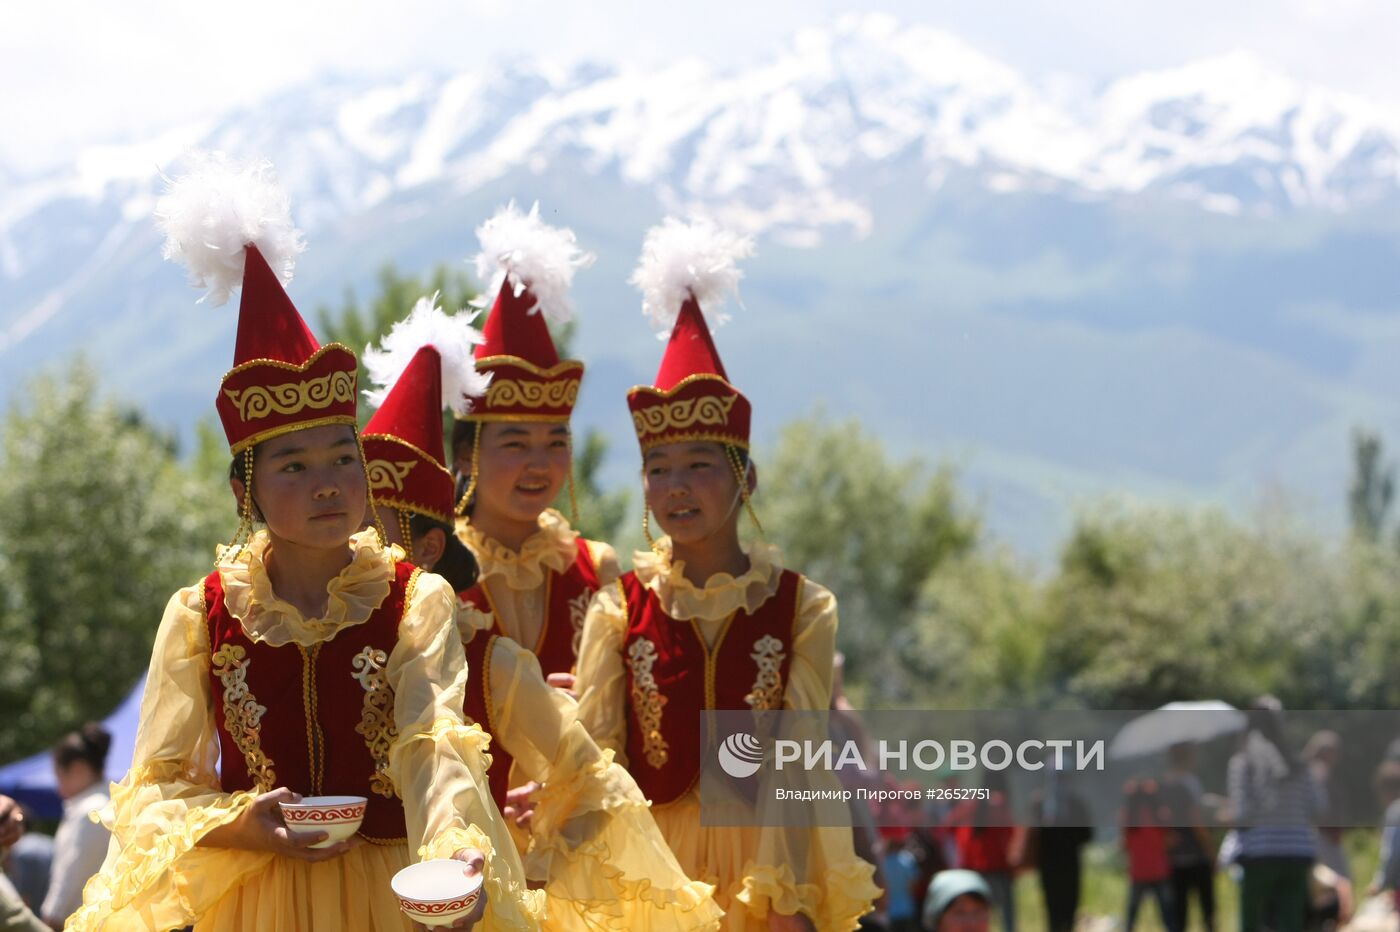 Фестиваль народного творчества в Киргизии "Кыргыз шырдагы"